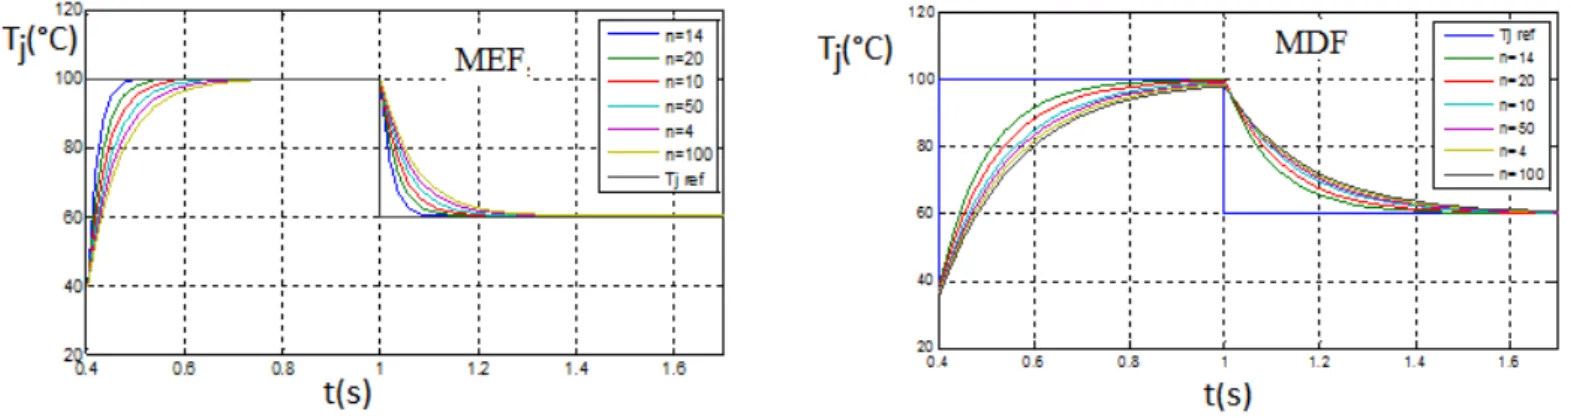 Figure 2.12  Comparaison entre les réponses thermiques obtenues par MDF et MEF